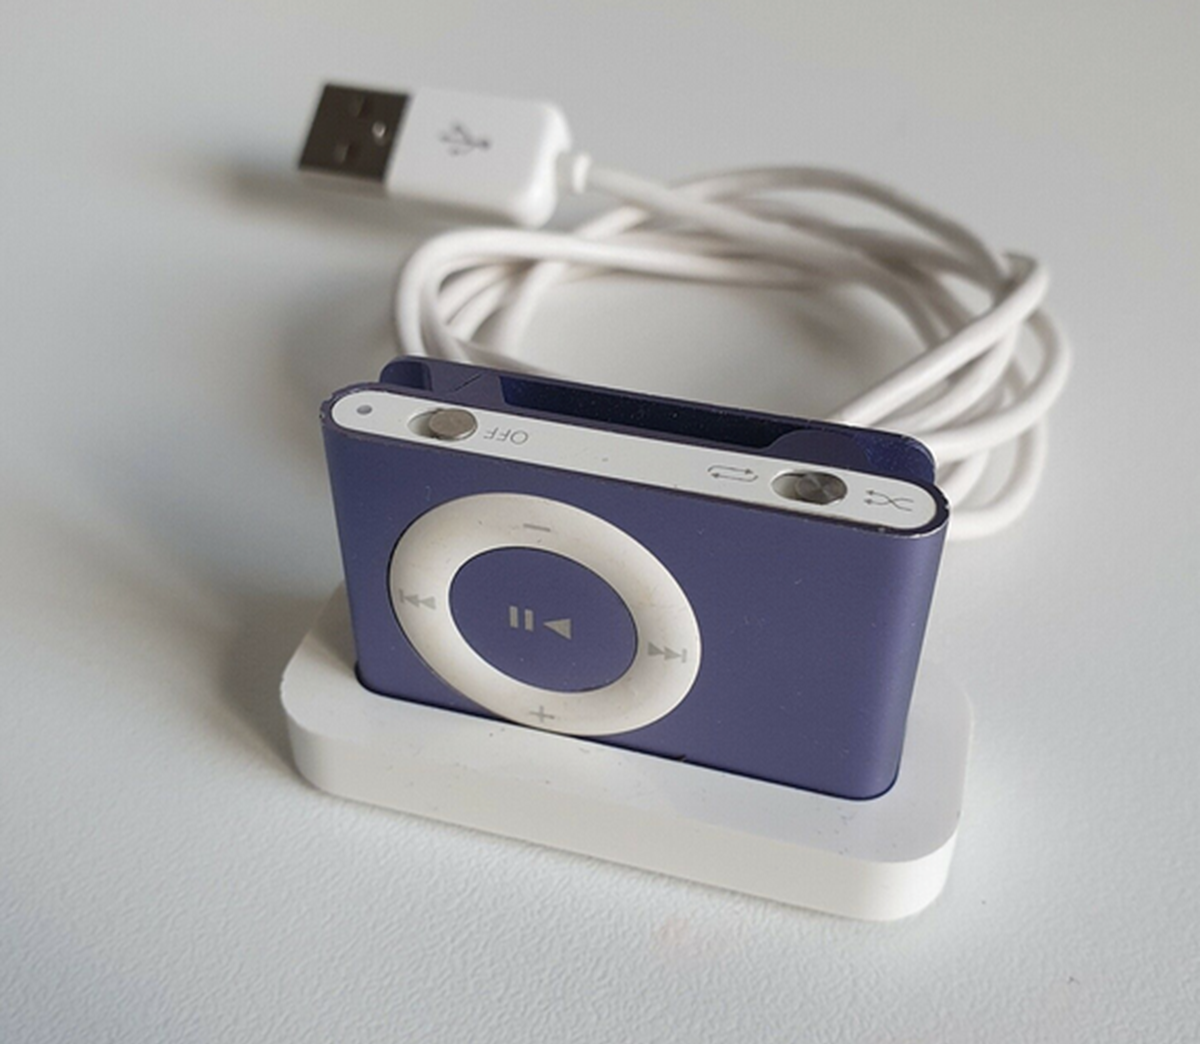 Heidi fra Brøndby Strand har i skrivende stund denne lille iPod - nemlig en lilla anden generation lilla iPod Shuffle, som rummer 1 gigabyte - til salg her på DBA for den nette sum af 200 kroner.